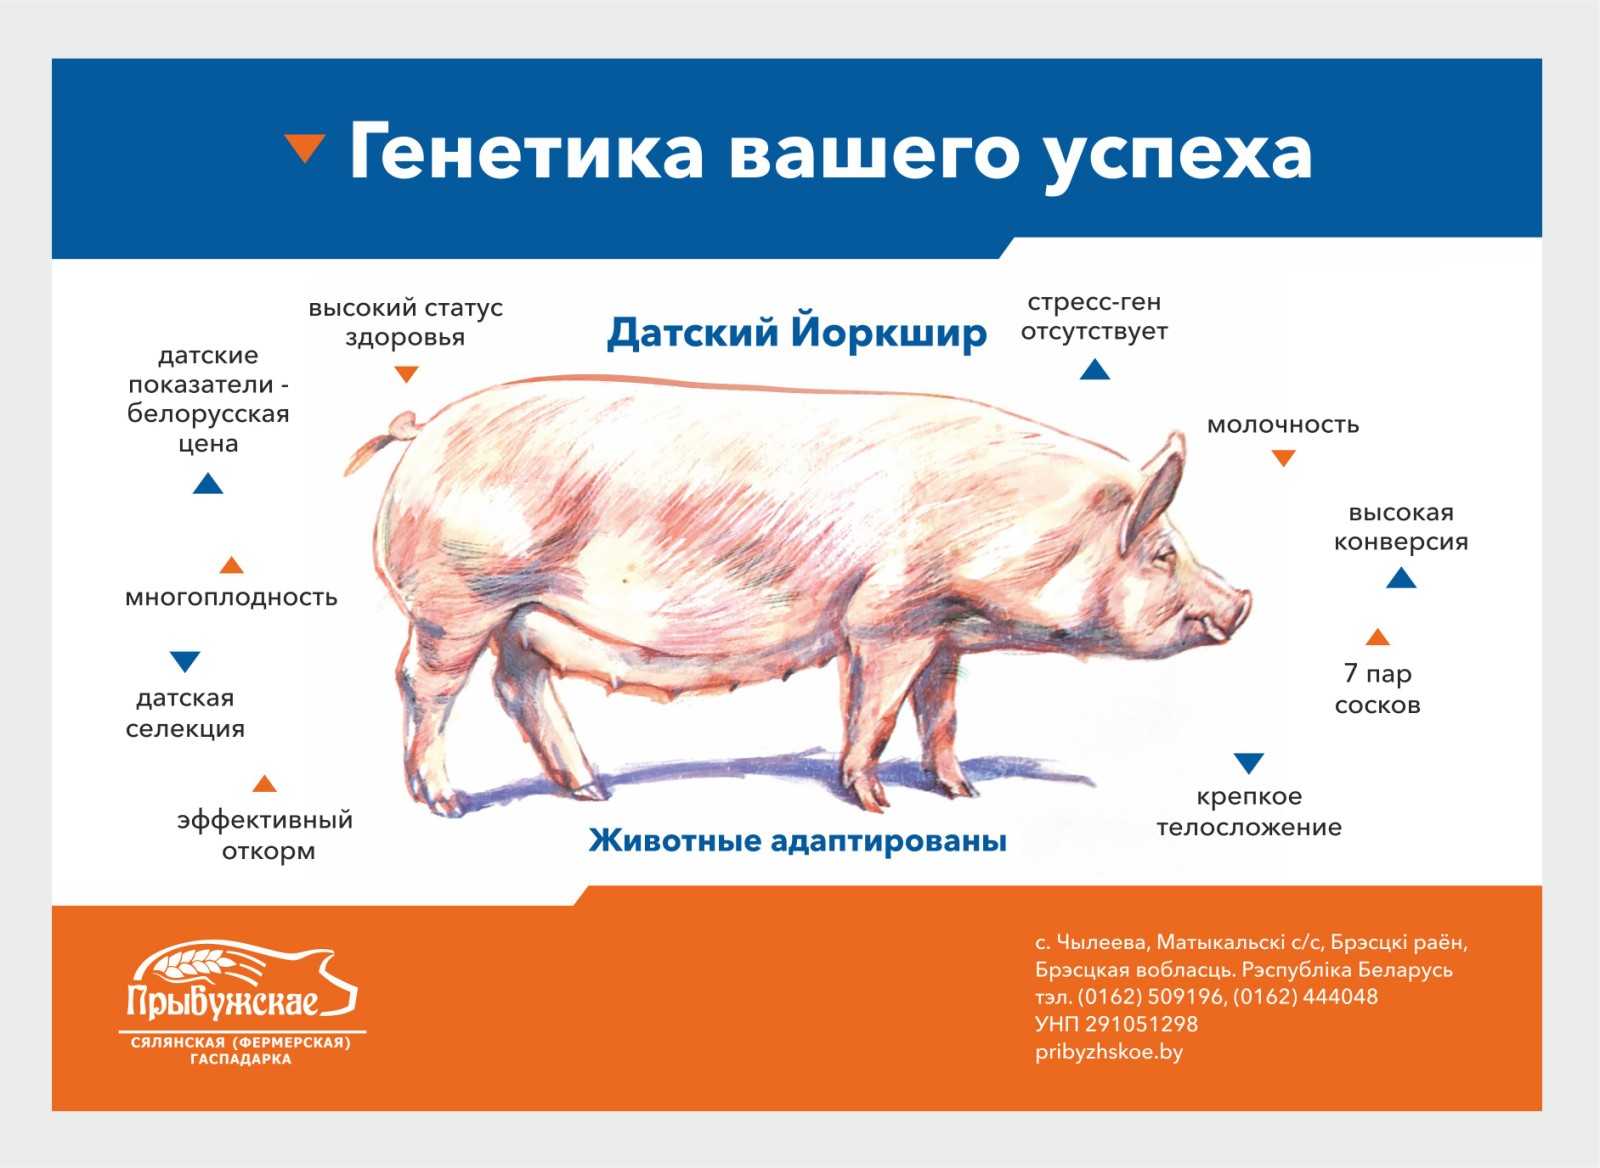 Все о йоркширской породе свиней